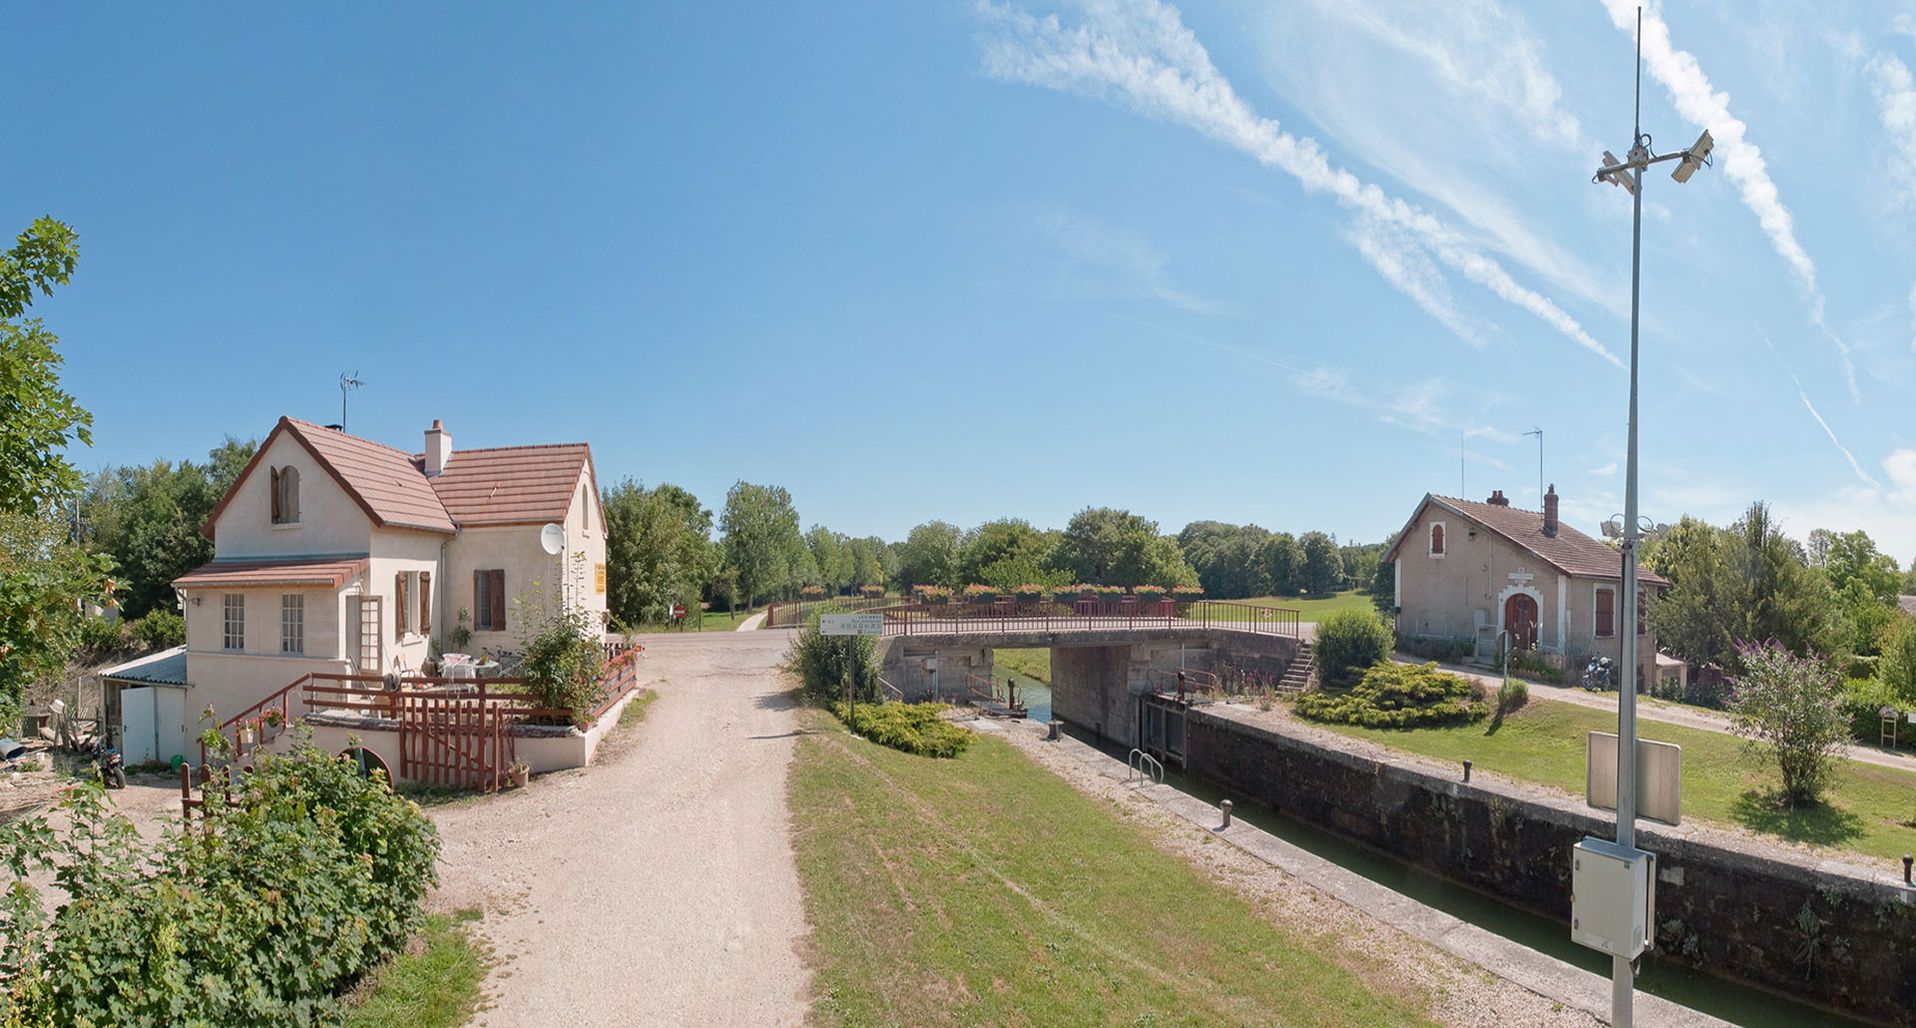 Canal de Bourgogne&nbsp;: maison éclusière et maison de garde, face-à-face sur le site de l’écluse 85 du versant Yonne à Lézinnes.